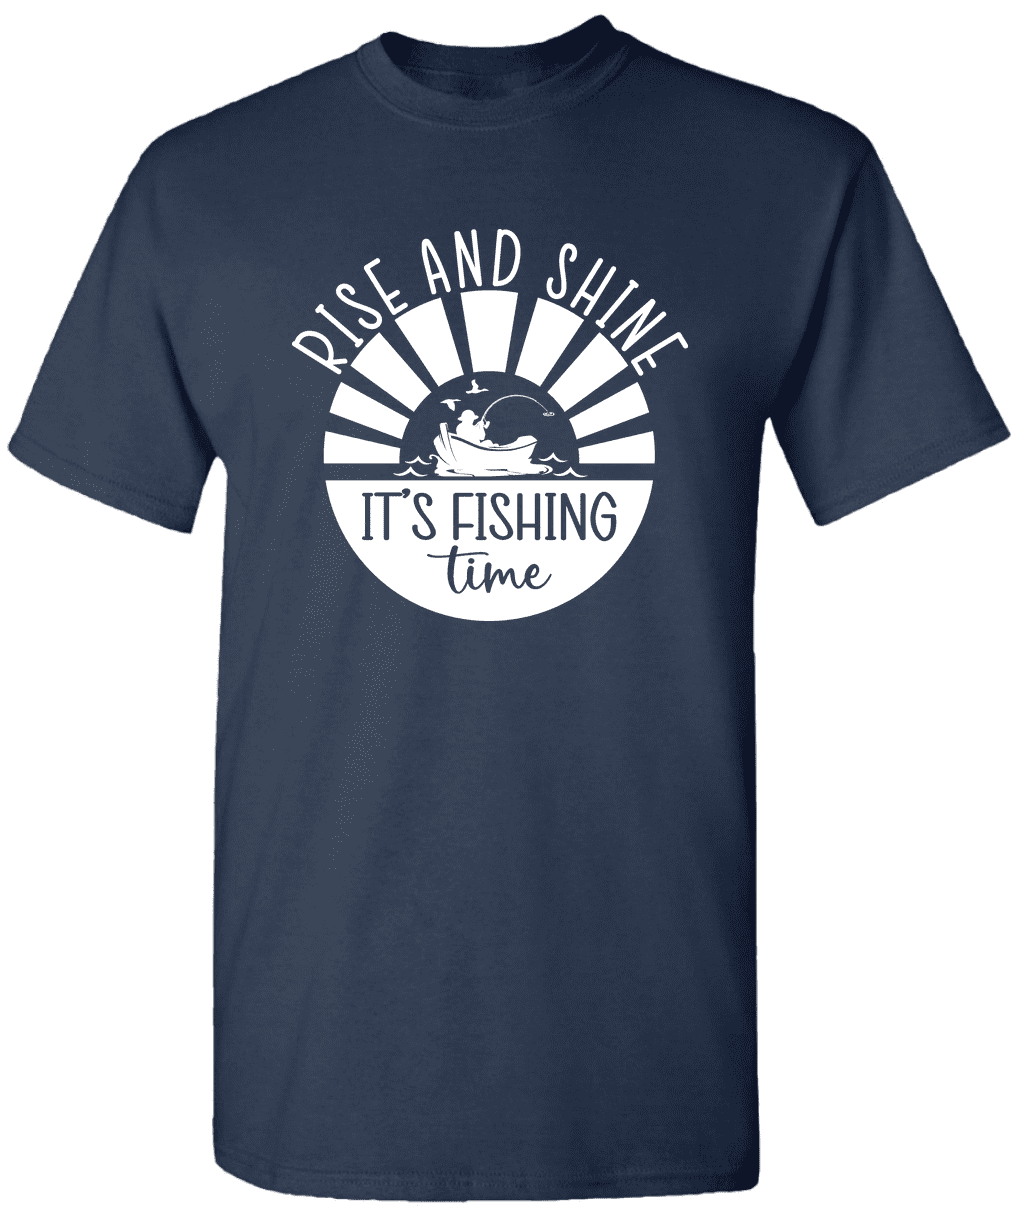 Rise And Shine It's Fishing Time - Novelty Fishing Shirt Fishing T-Shirt 